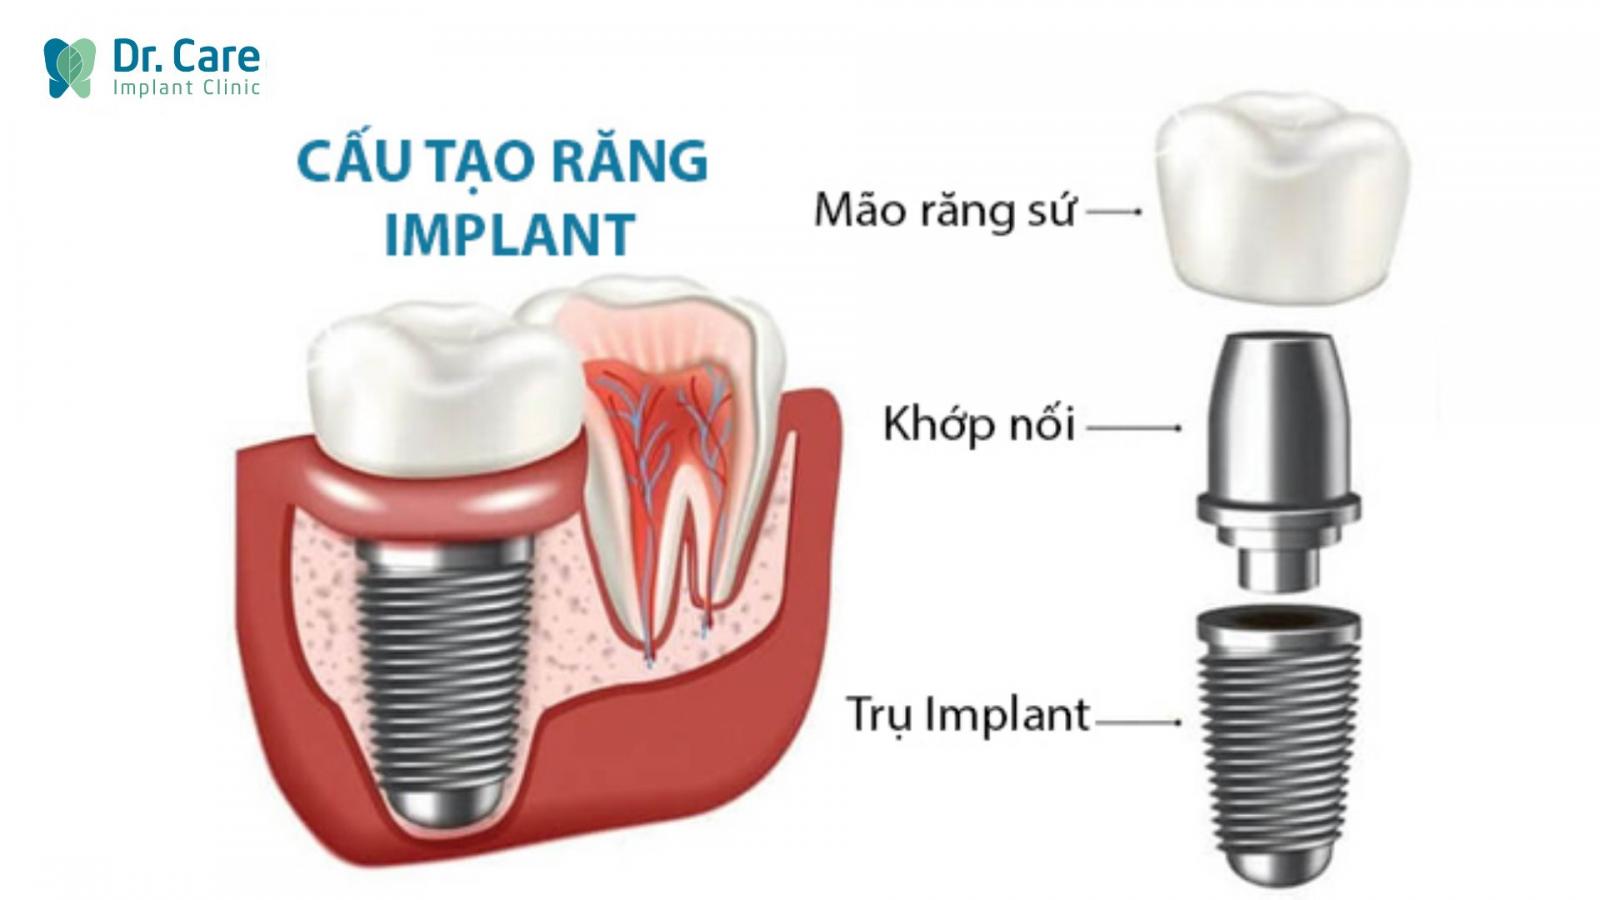 Tại sao trồng răng Implant khắc phục được tình trạng sưng nướu răng?